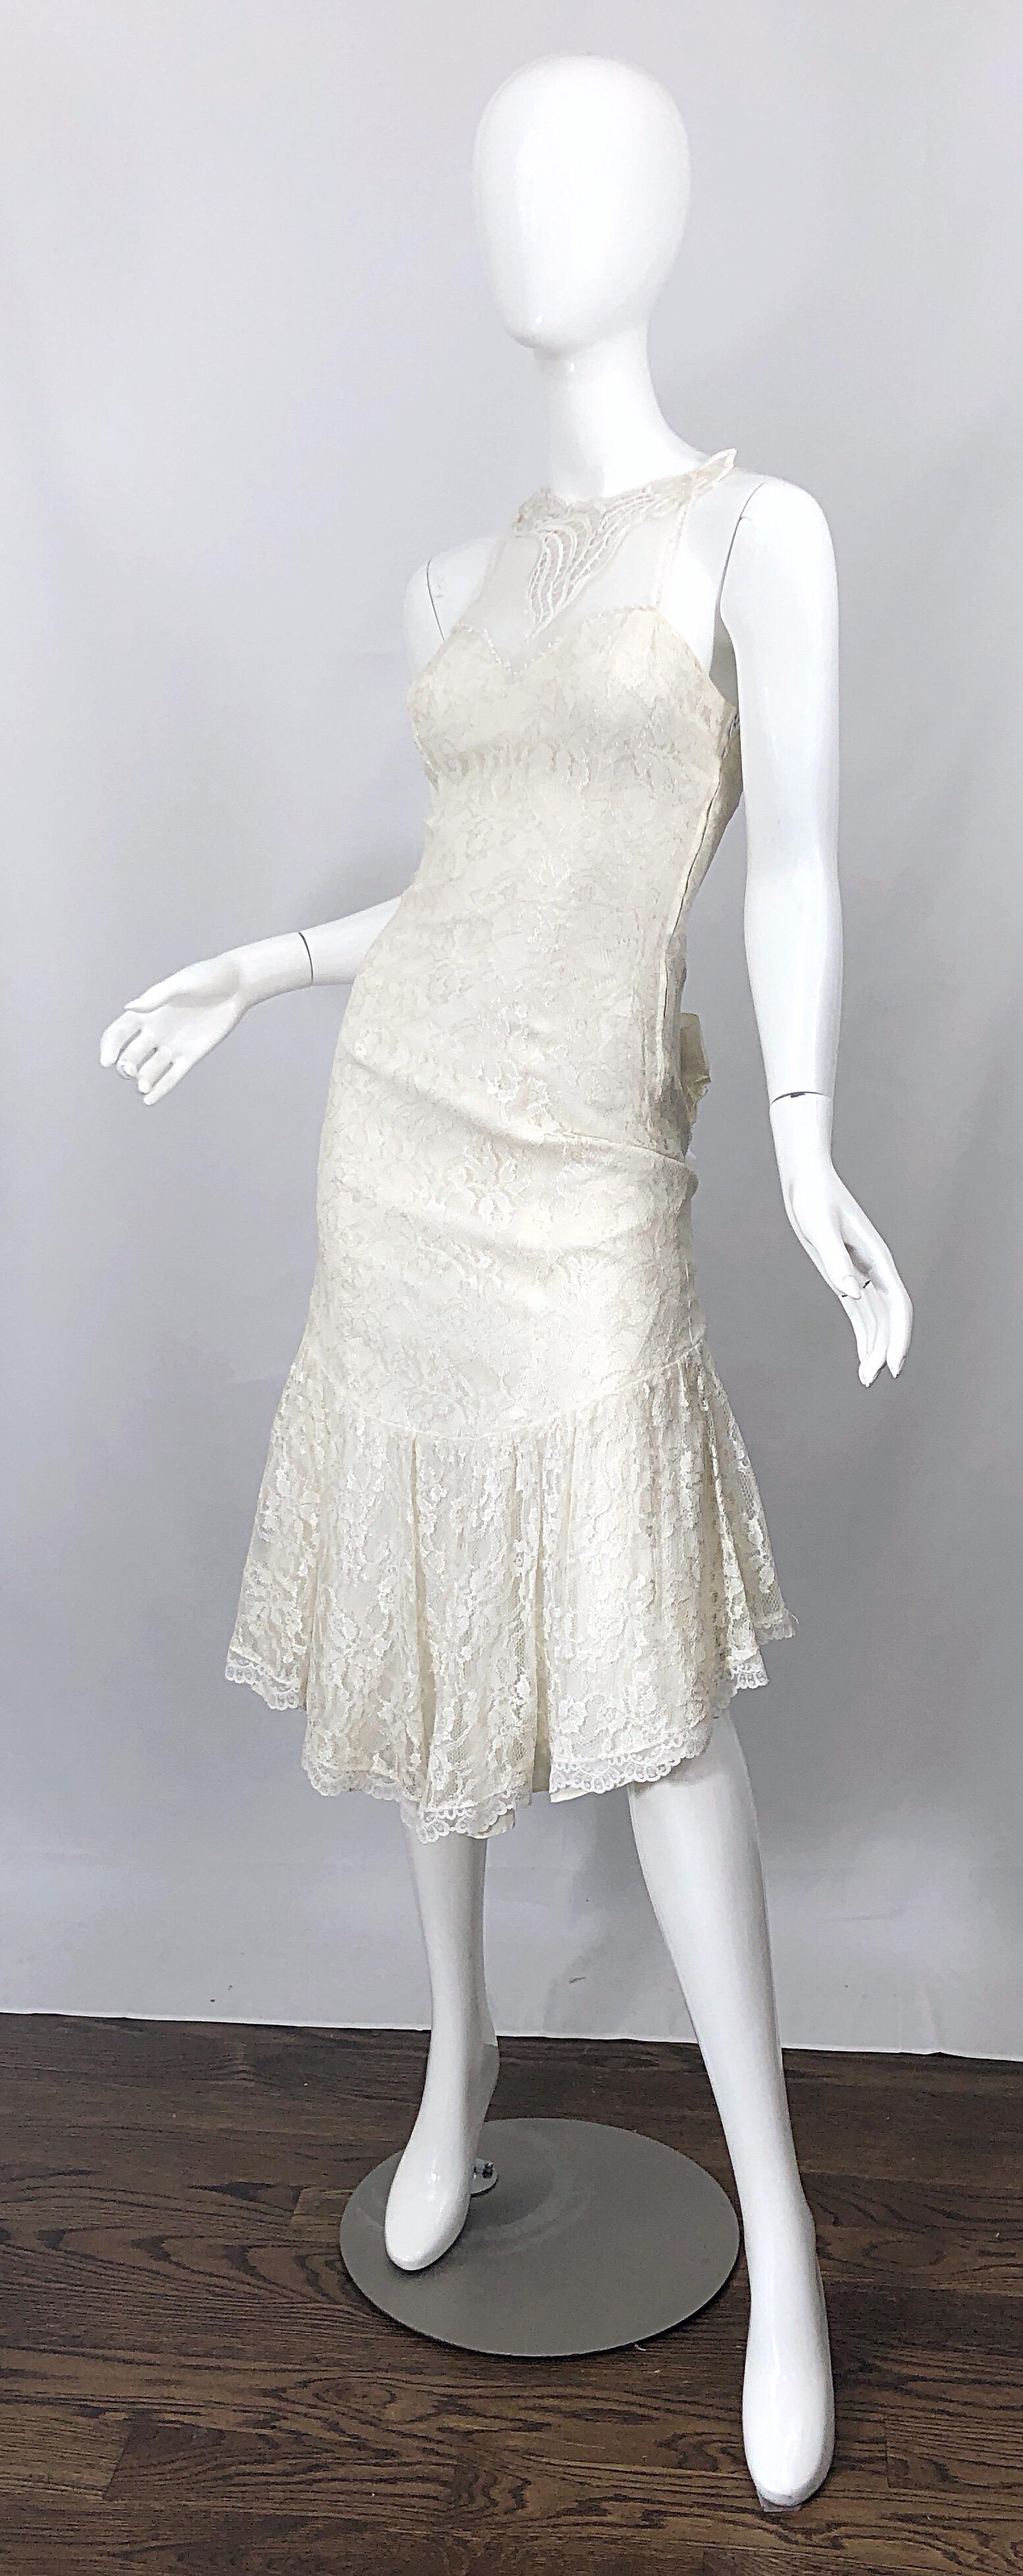 1980s white dress